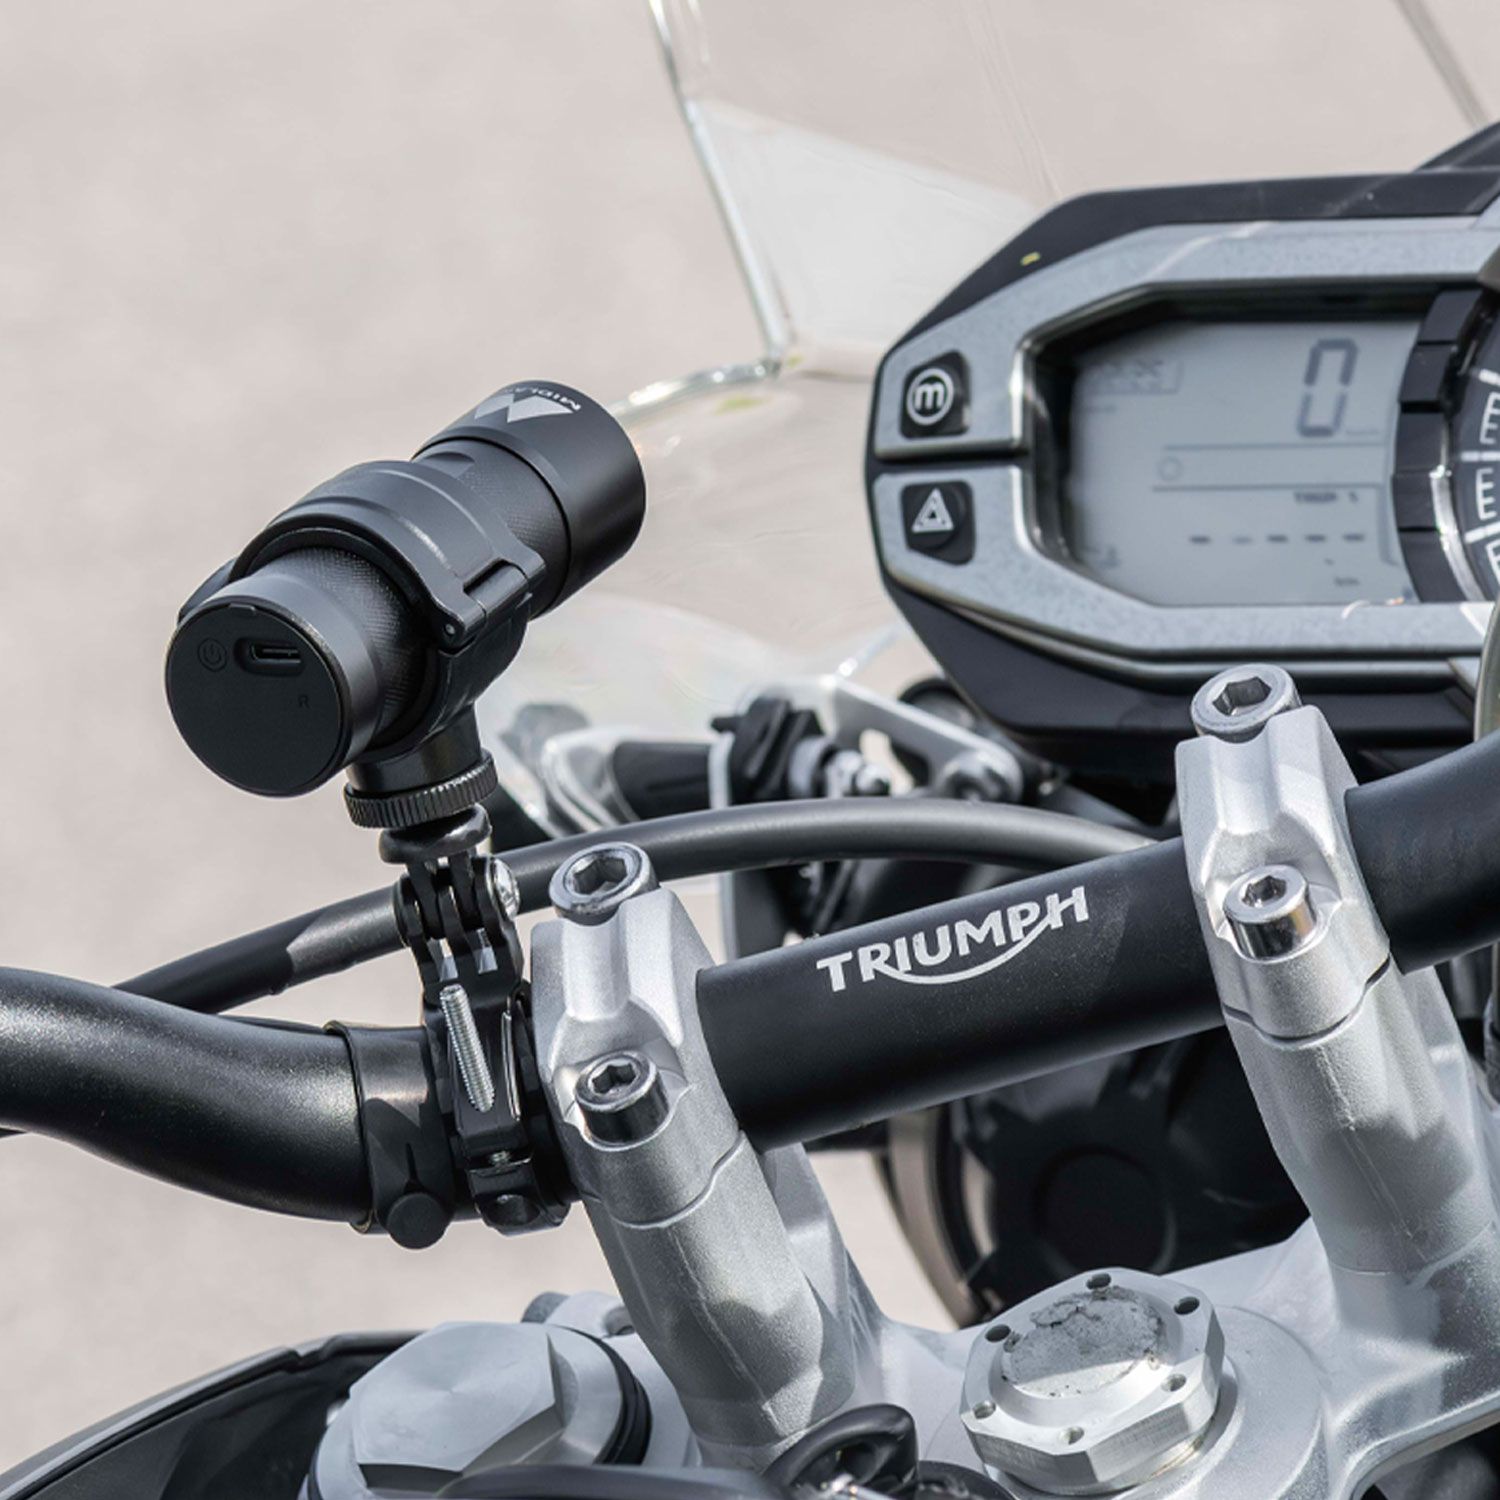 Bike Guardian Pro - Caméra DVR pour moto